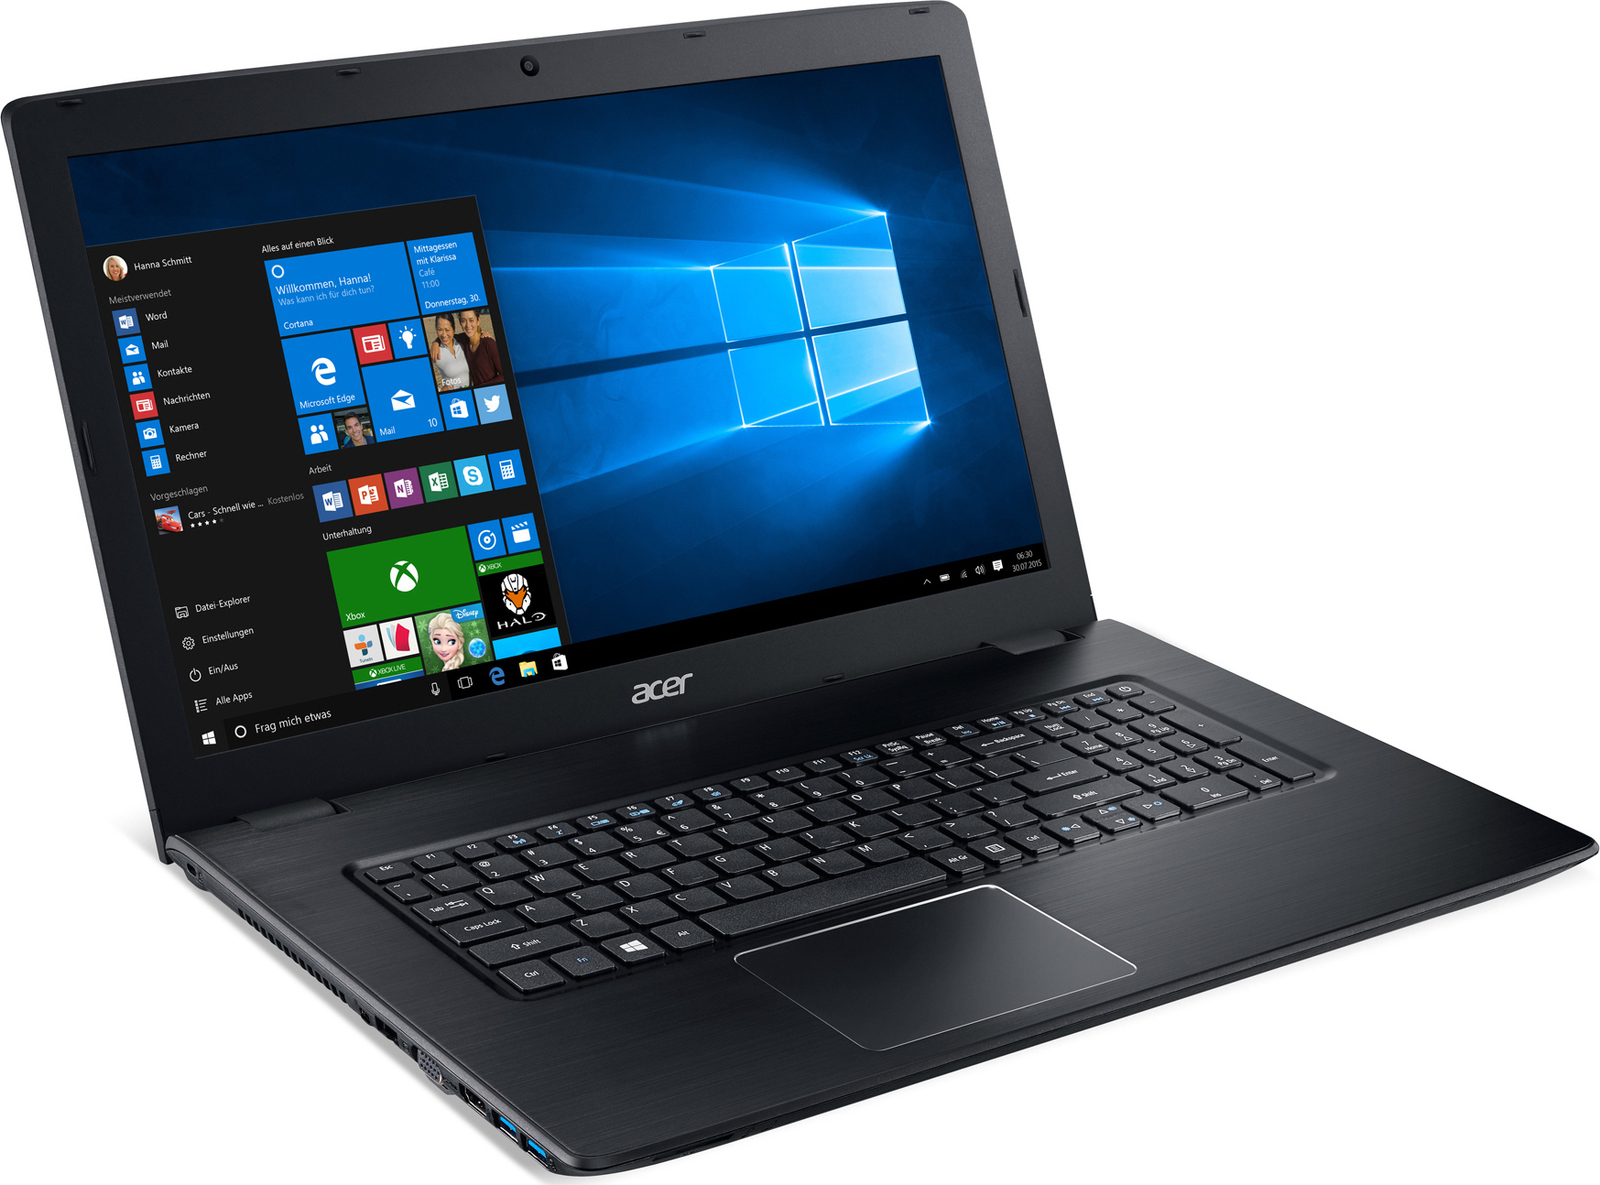 Acer Aspire E5 576G i5 7200U 4GB 1TB GeForce 940MX FHD 